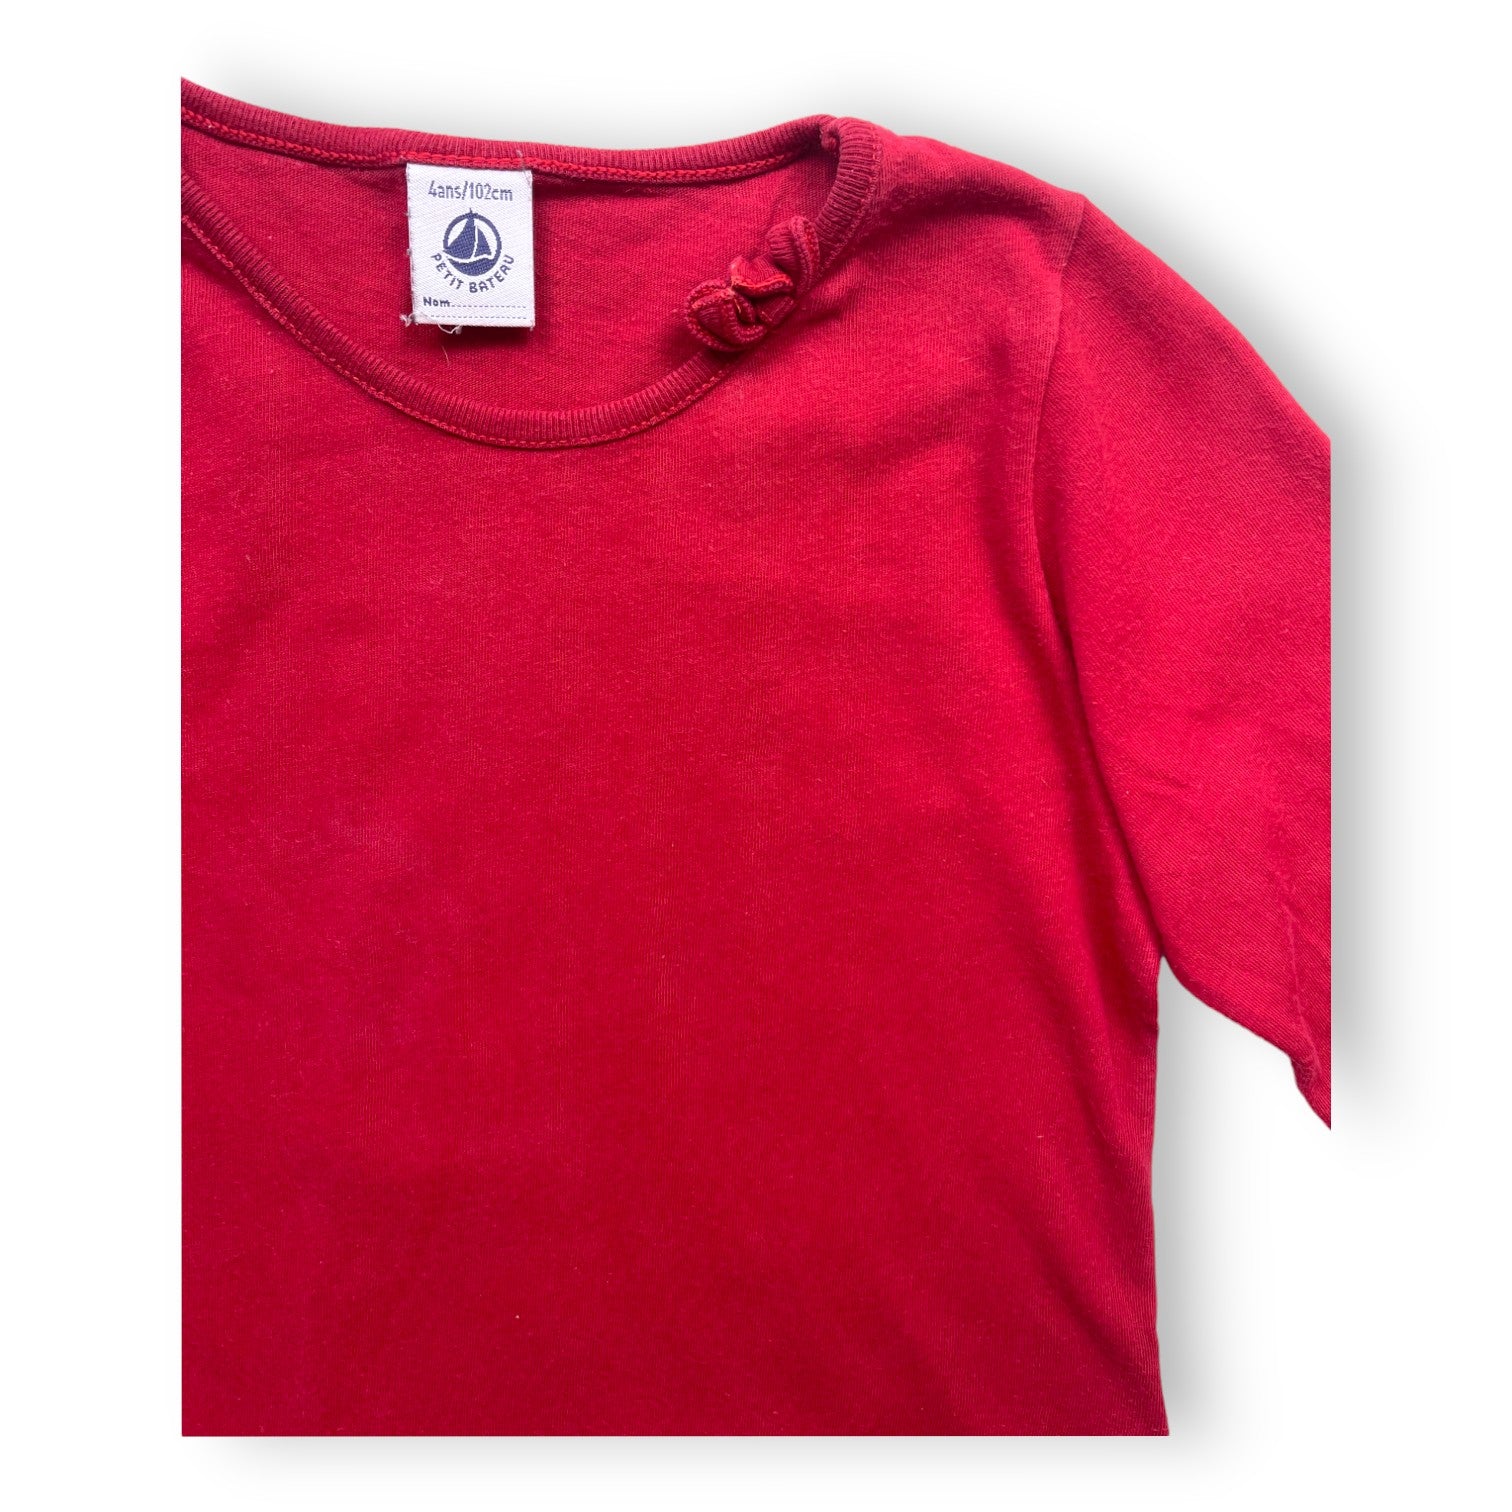 PETIT BATEAU - T shirt manches longues rouge - 4 ans